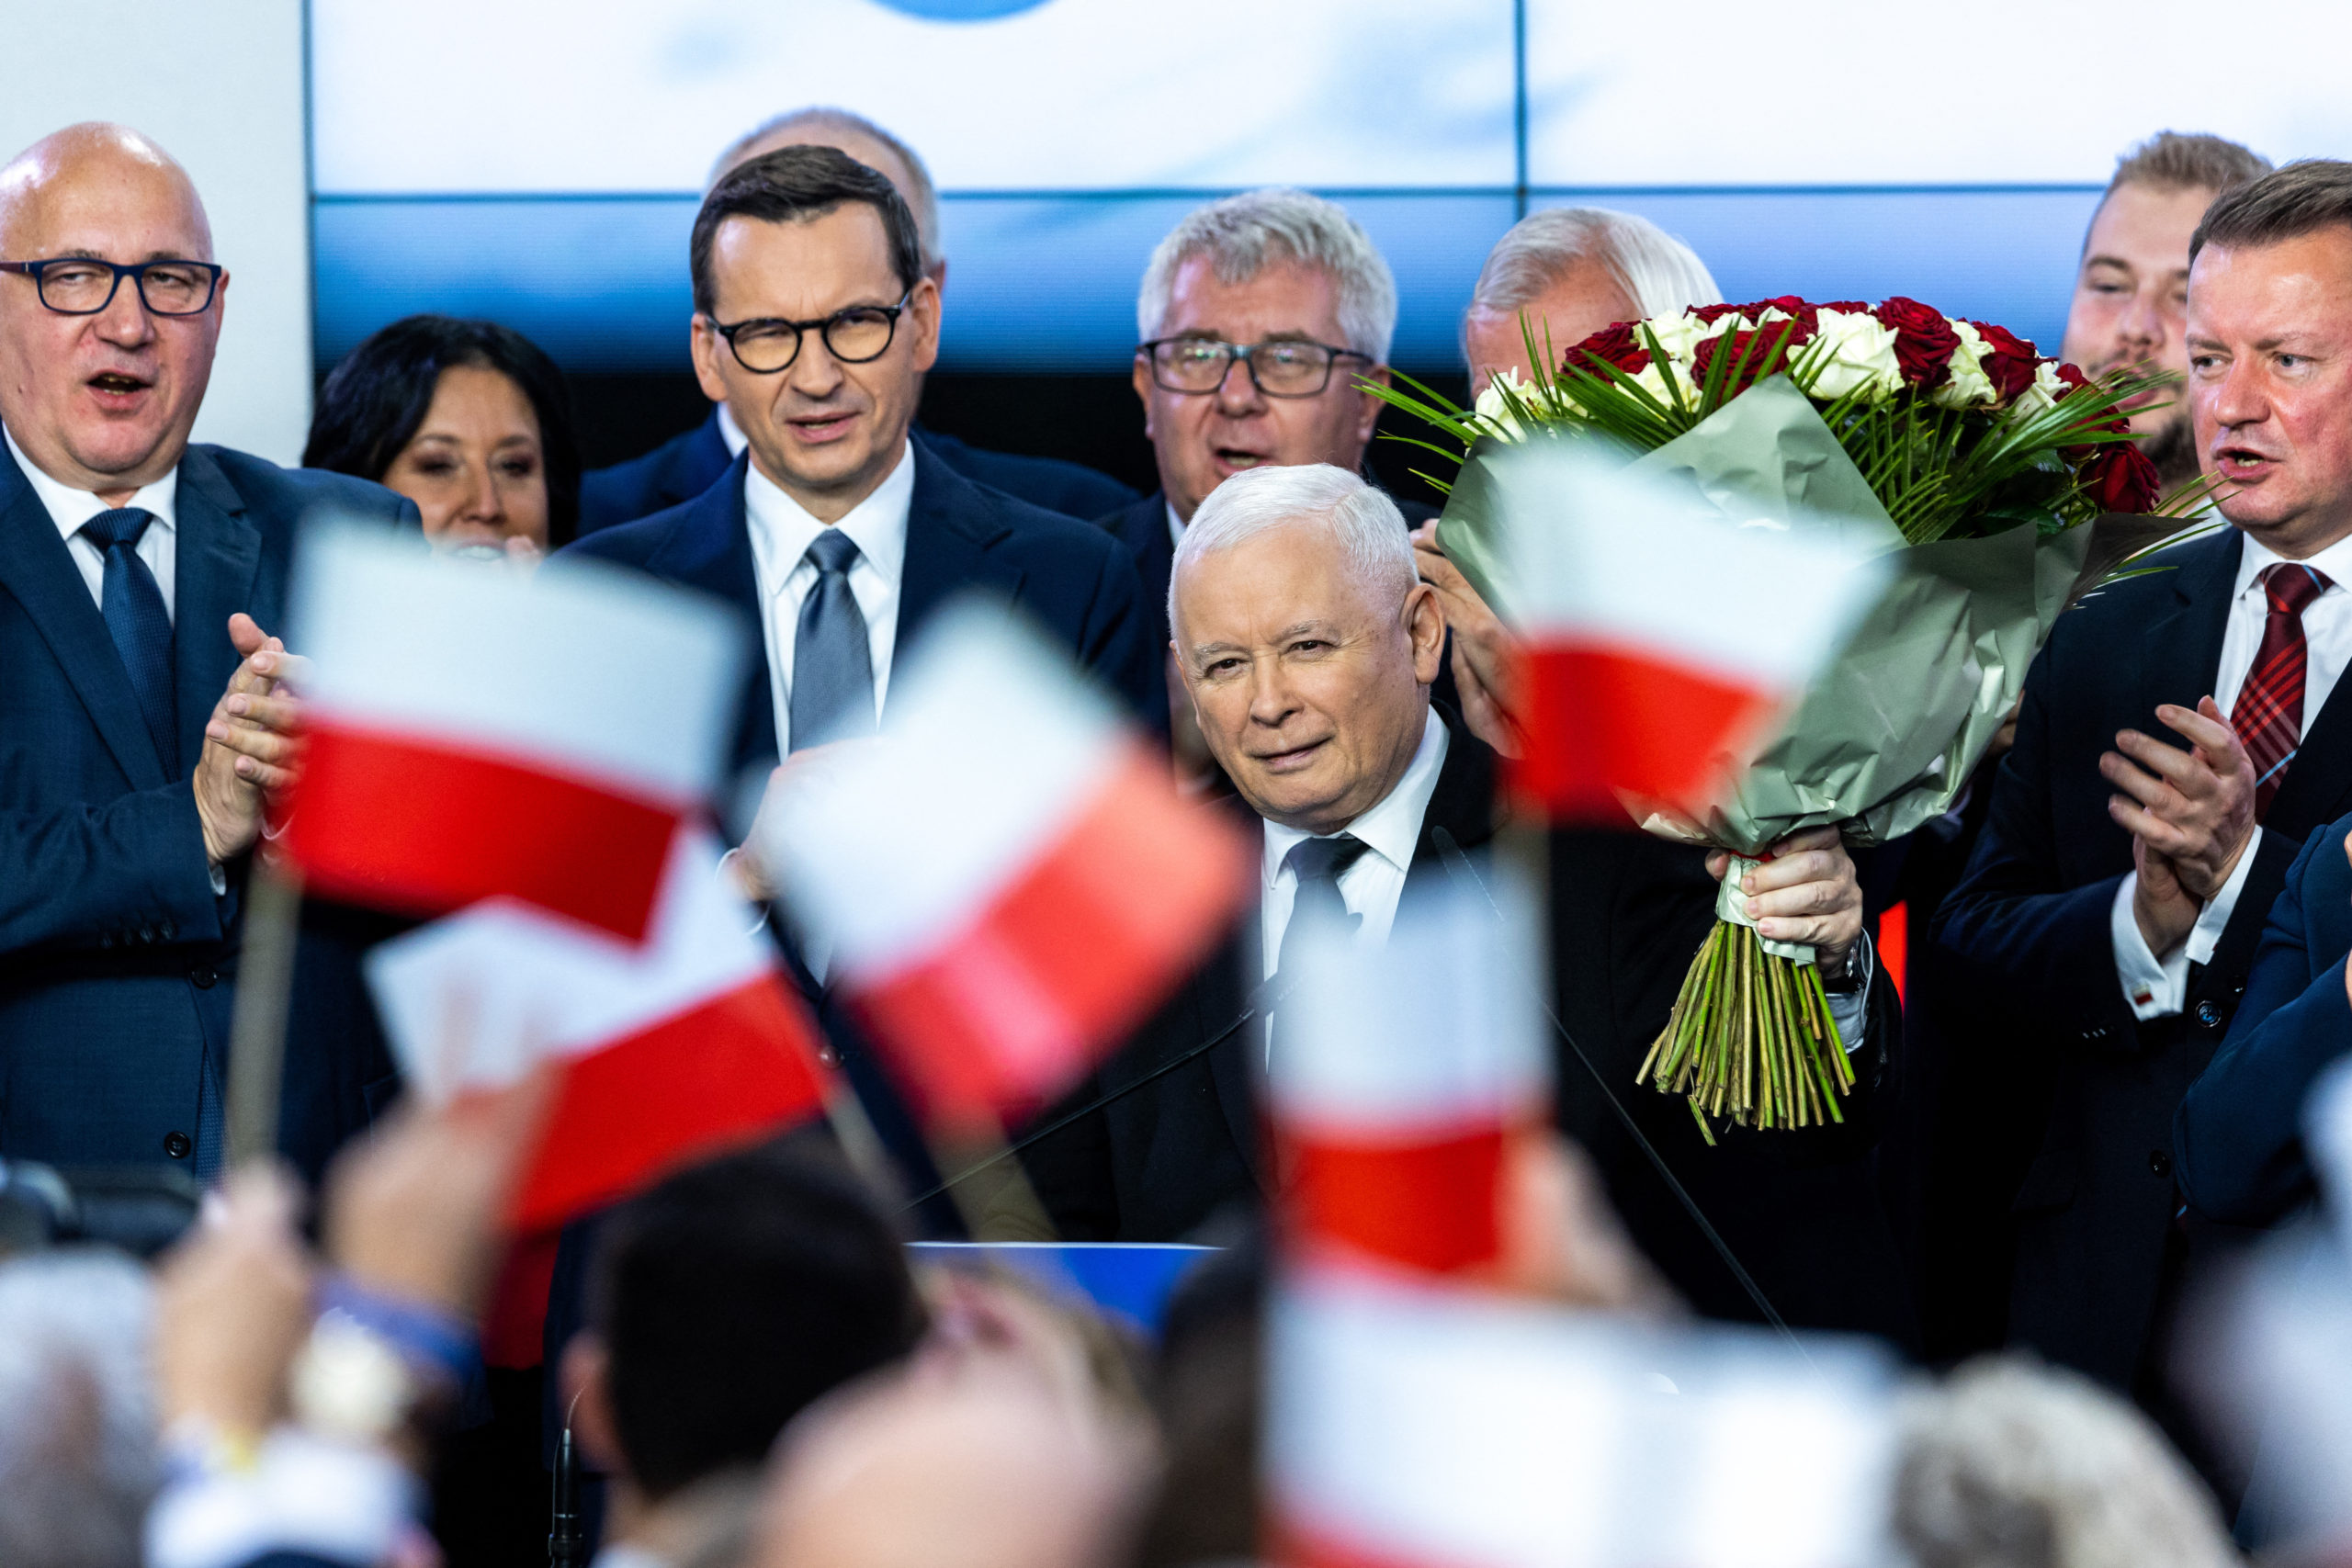 Lengyel választások: a kormánypárt a voksok 35,61 százalékát kapta, a fő ellenzéki tömörülés 30,51 százalékot ért el a végeredmény szerint